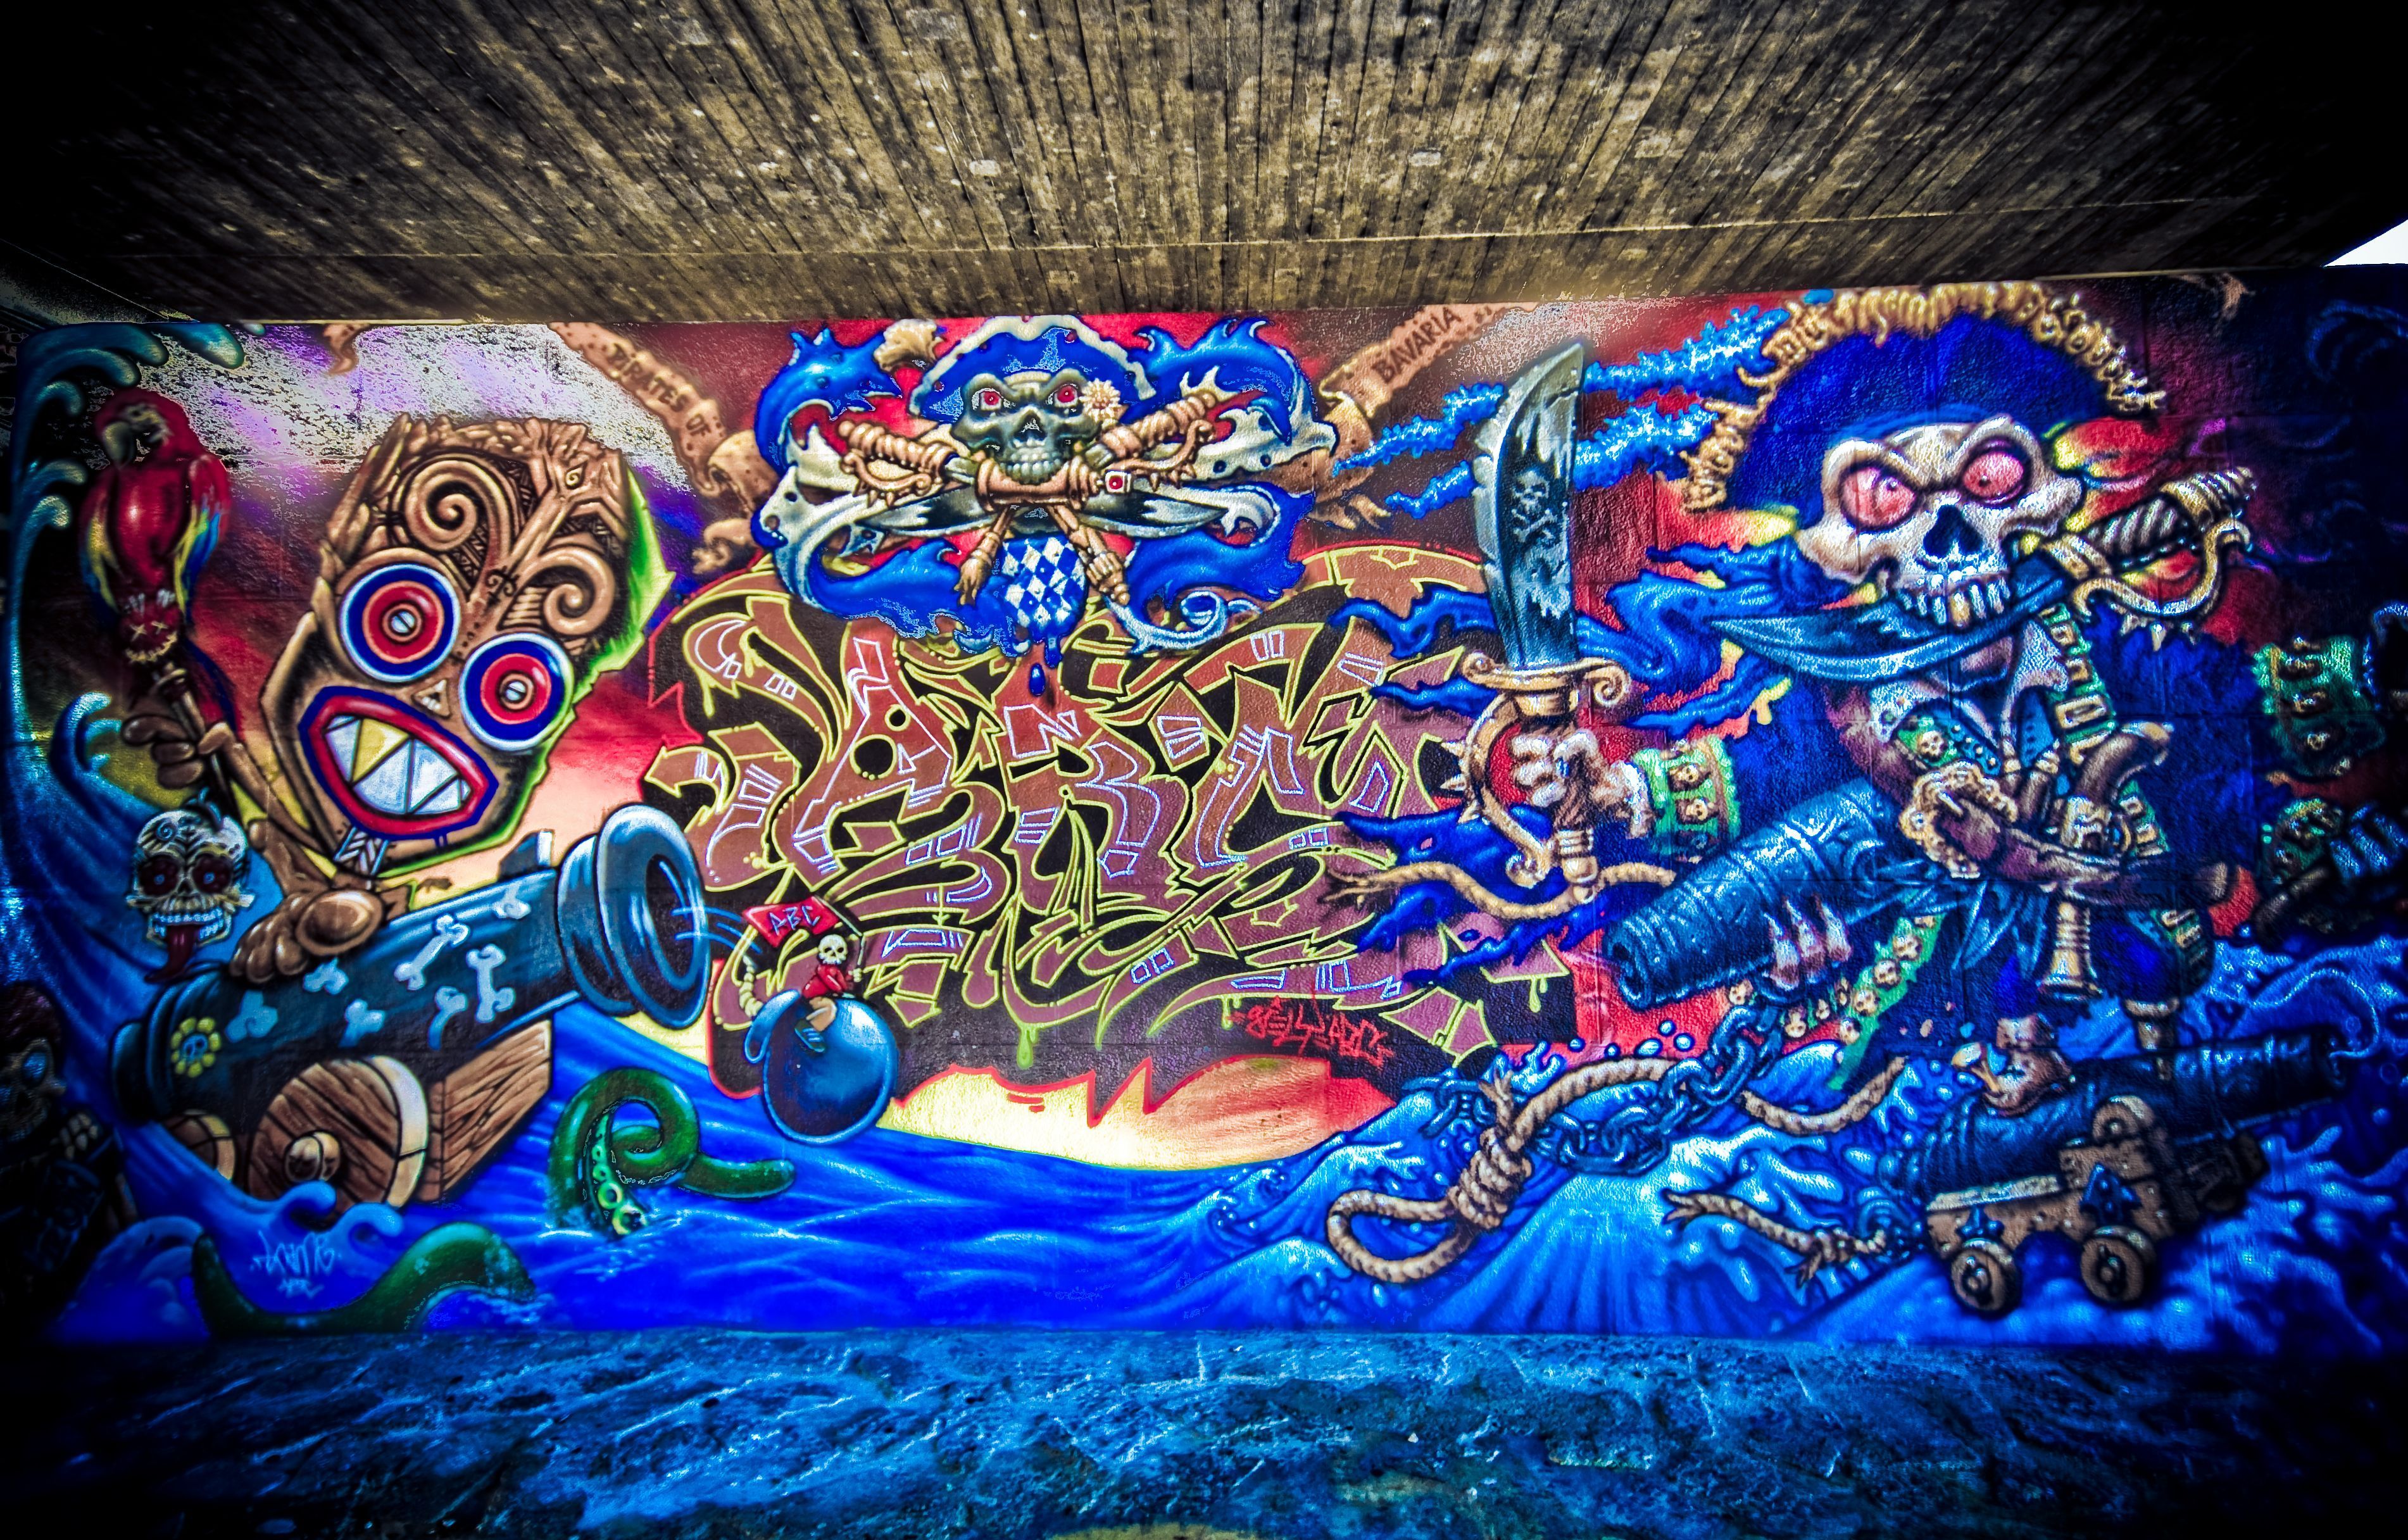 graffiti-mural-hd-wallpaper-3D.jpg